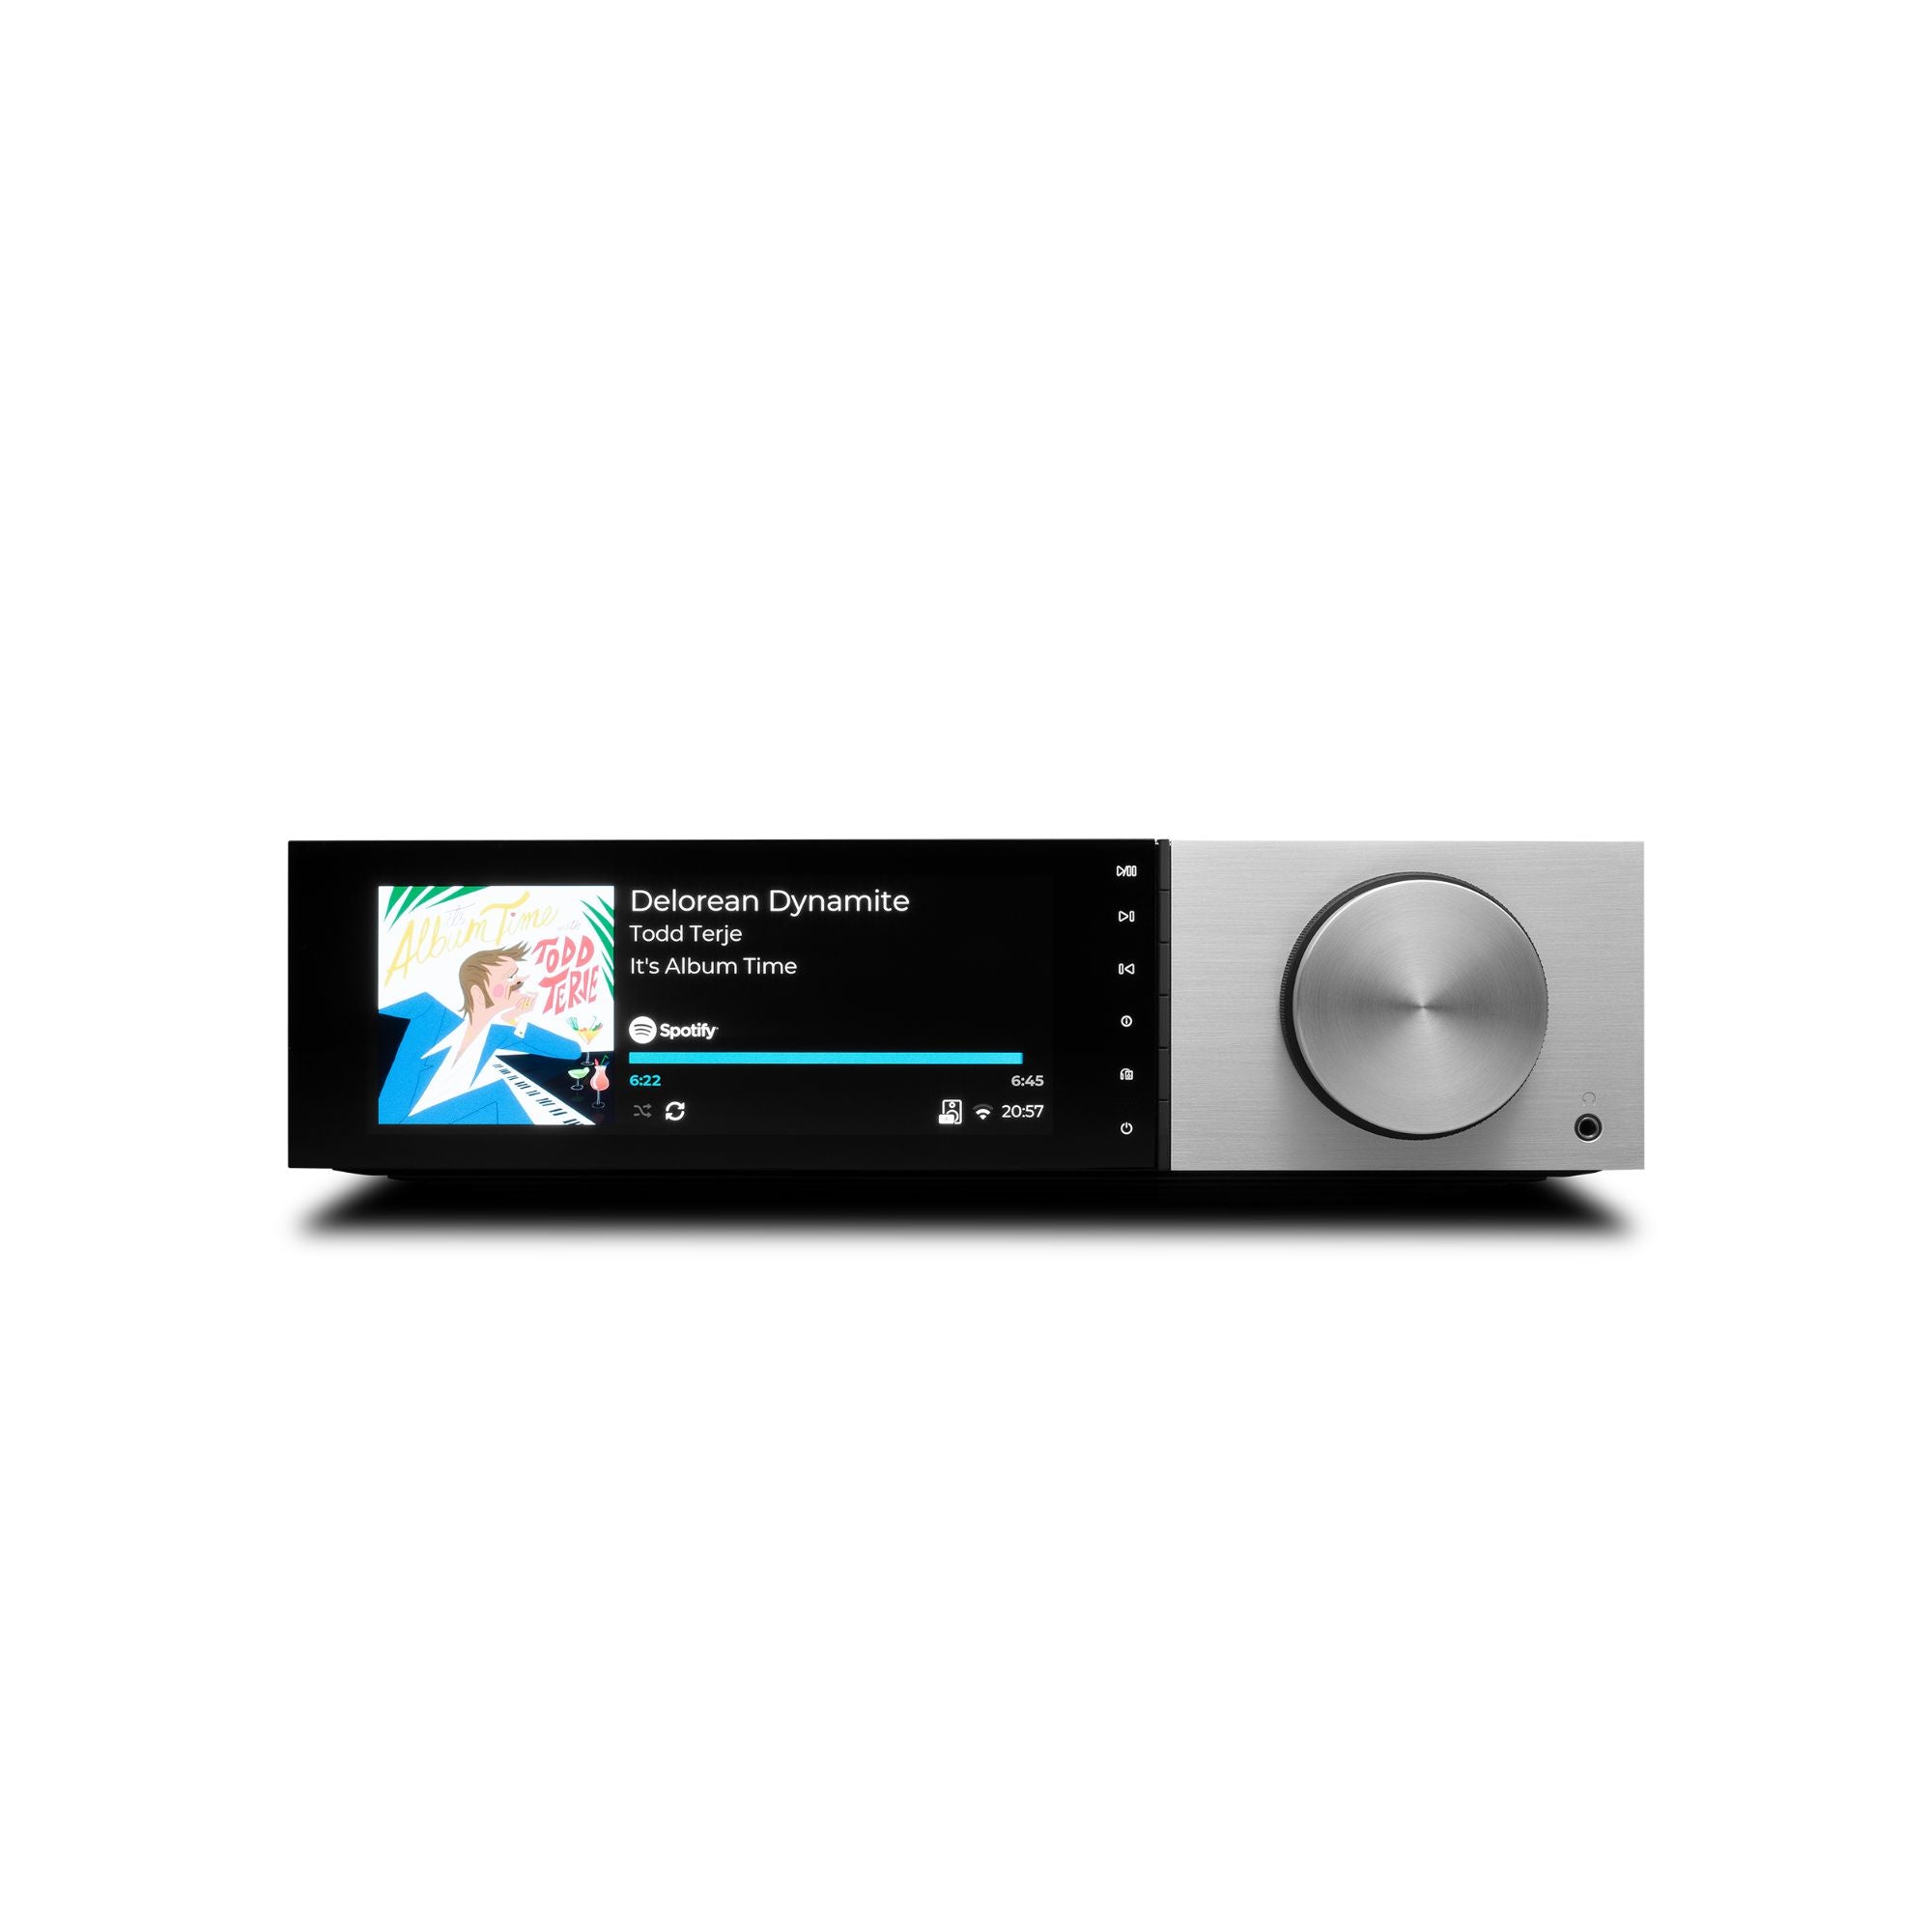 Cambridge Audio Evo 150 DeLorean Edition - Streaming Amplifier, Cambridge Audio, Network Audio Player - AVStore.in